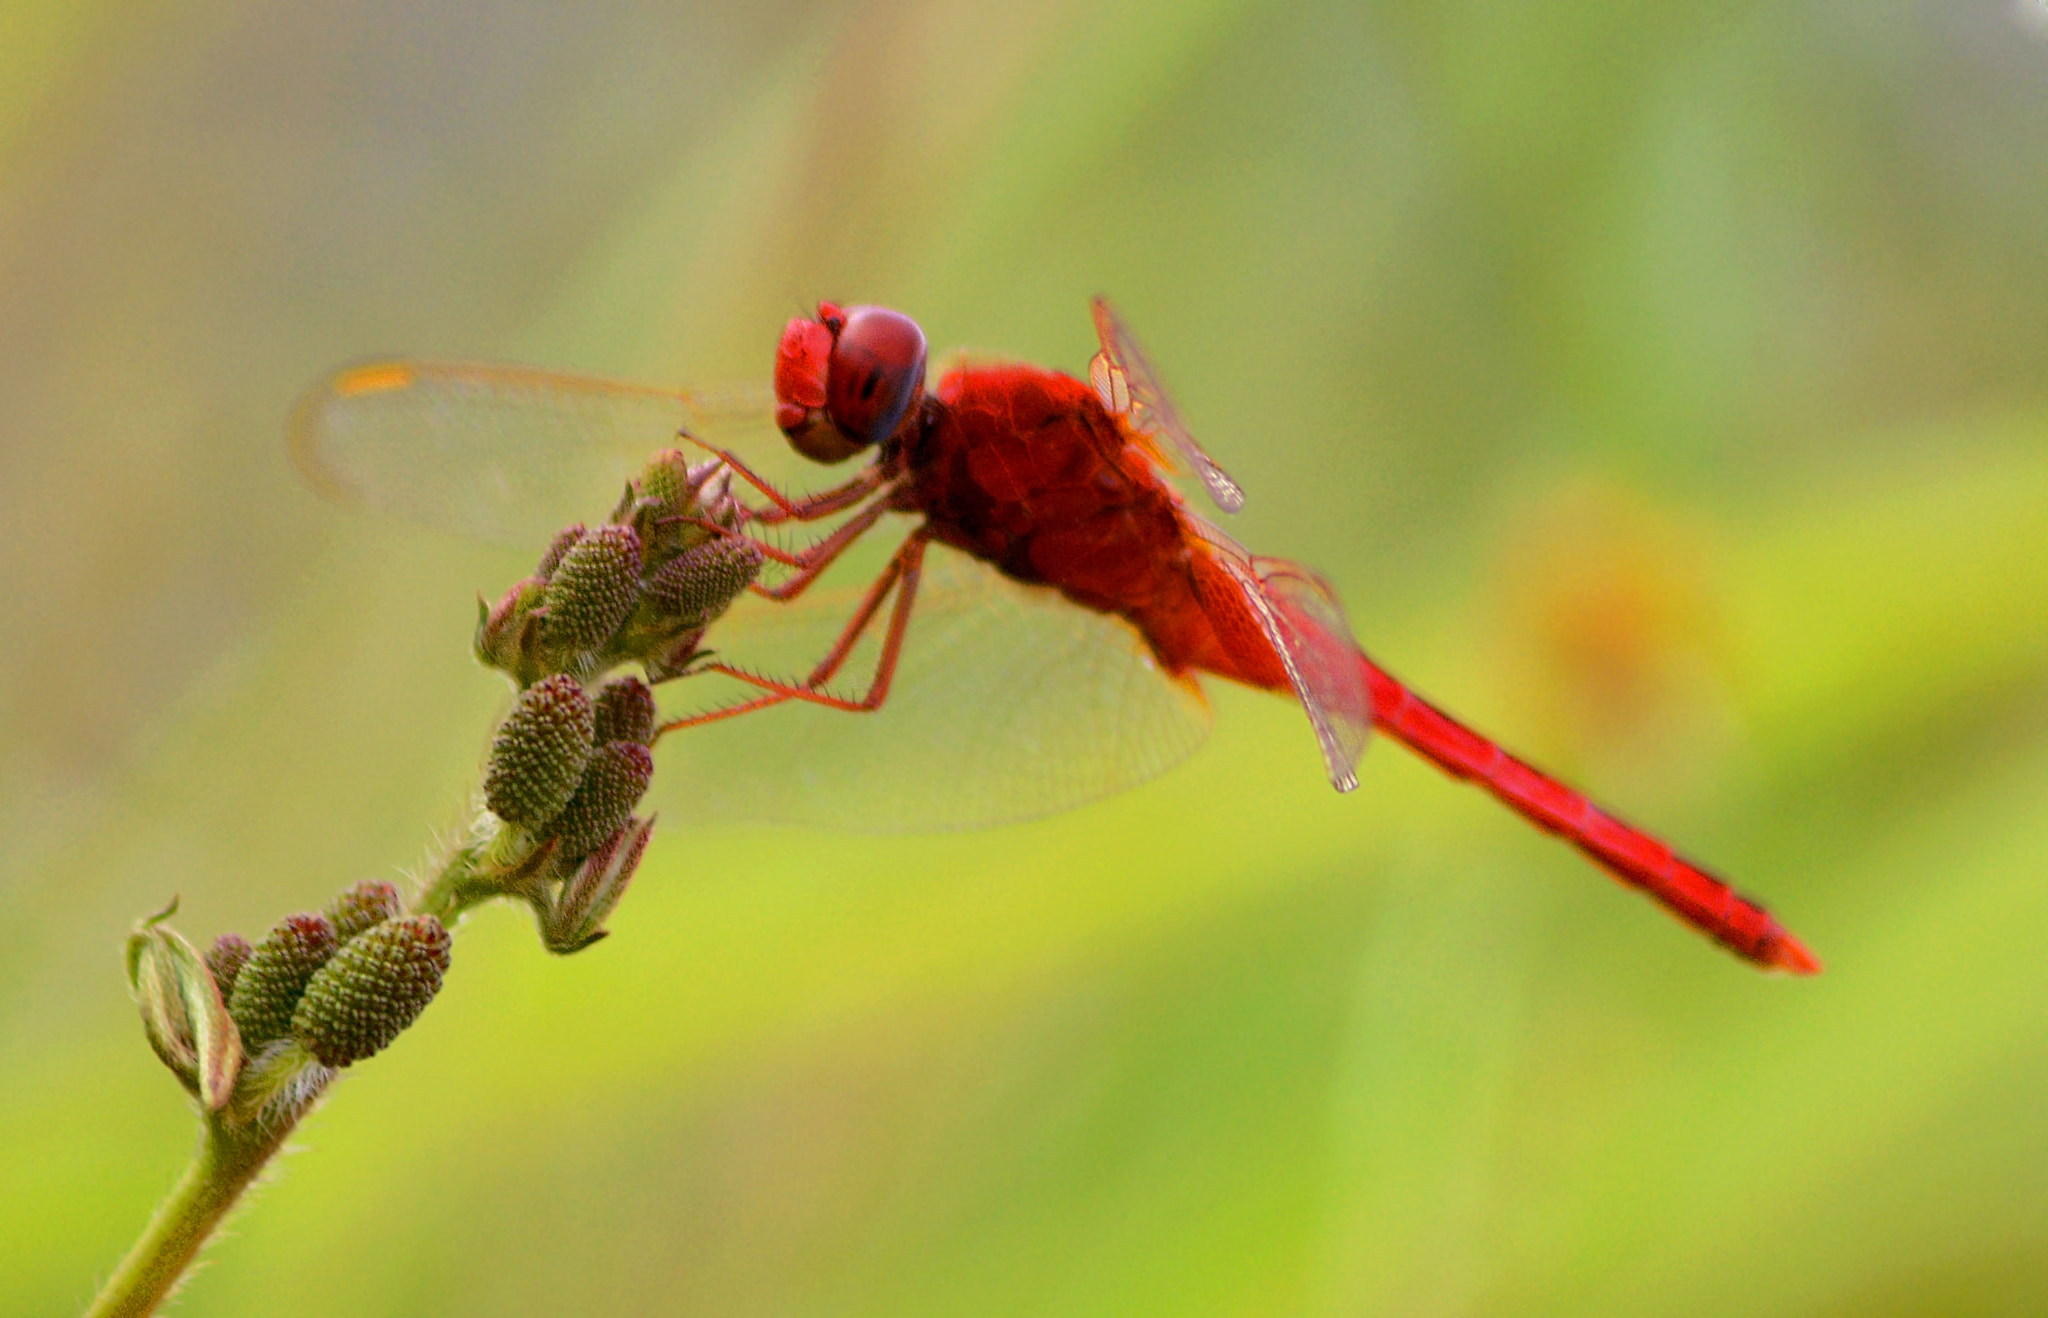 AF Zoom-Nikkor 80-200mm f/4.5-5.6D sample photo. A dragonfly photography